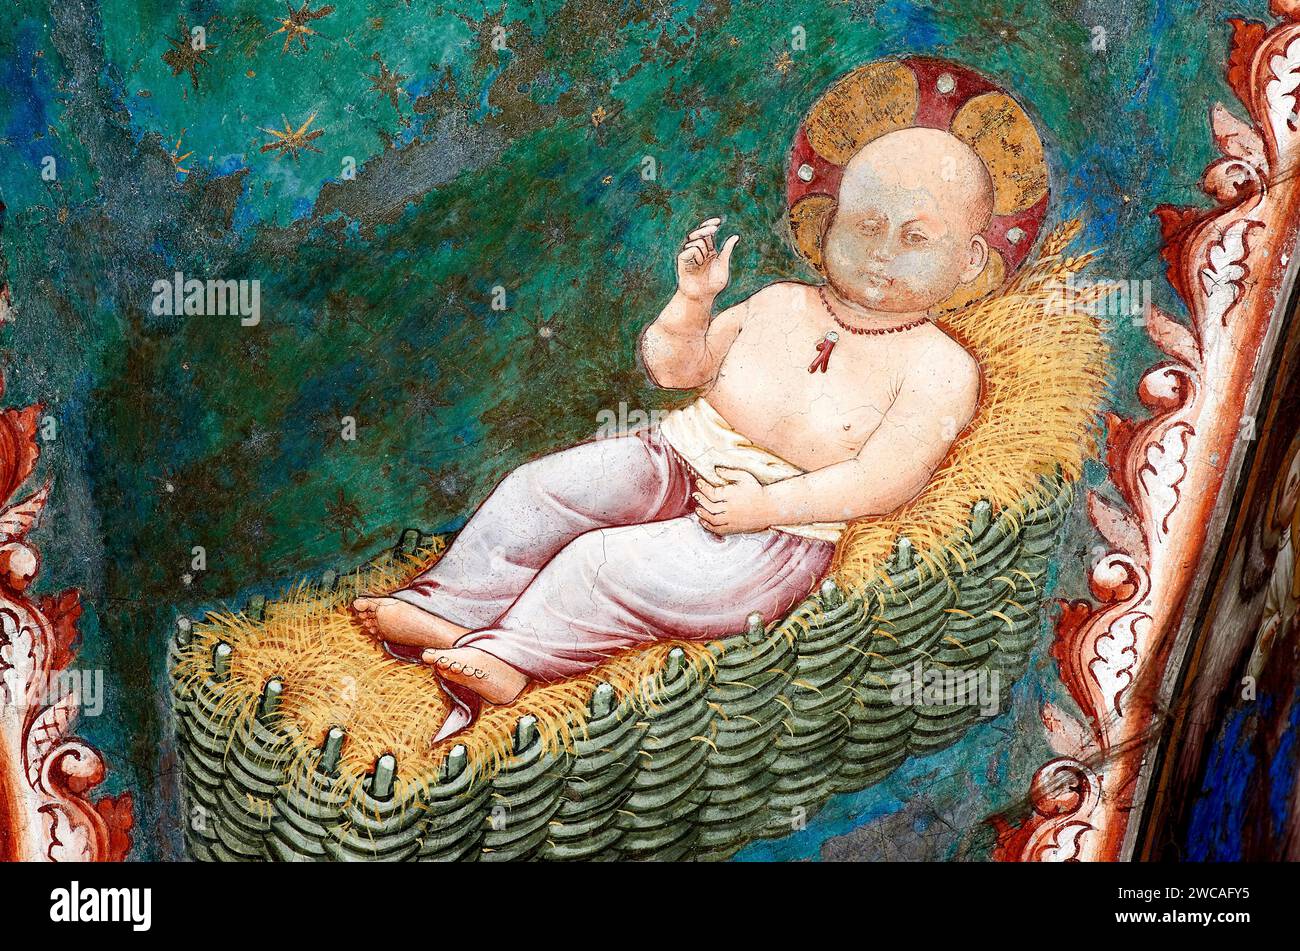 Gesù Bambino nella mangiatoia,con collana di corallo che allontana il male - affresco - pittore emiliano neogiottesco del 1425 - Vignola (Mo), Cap Banque D'Images